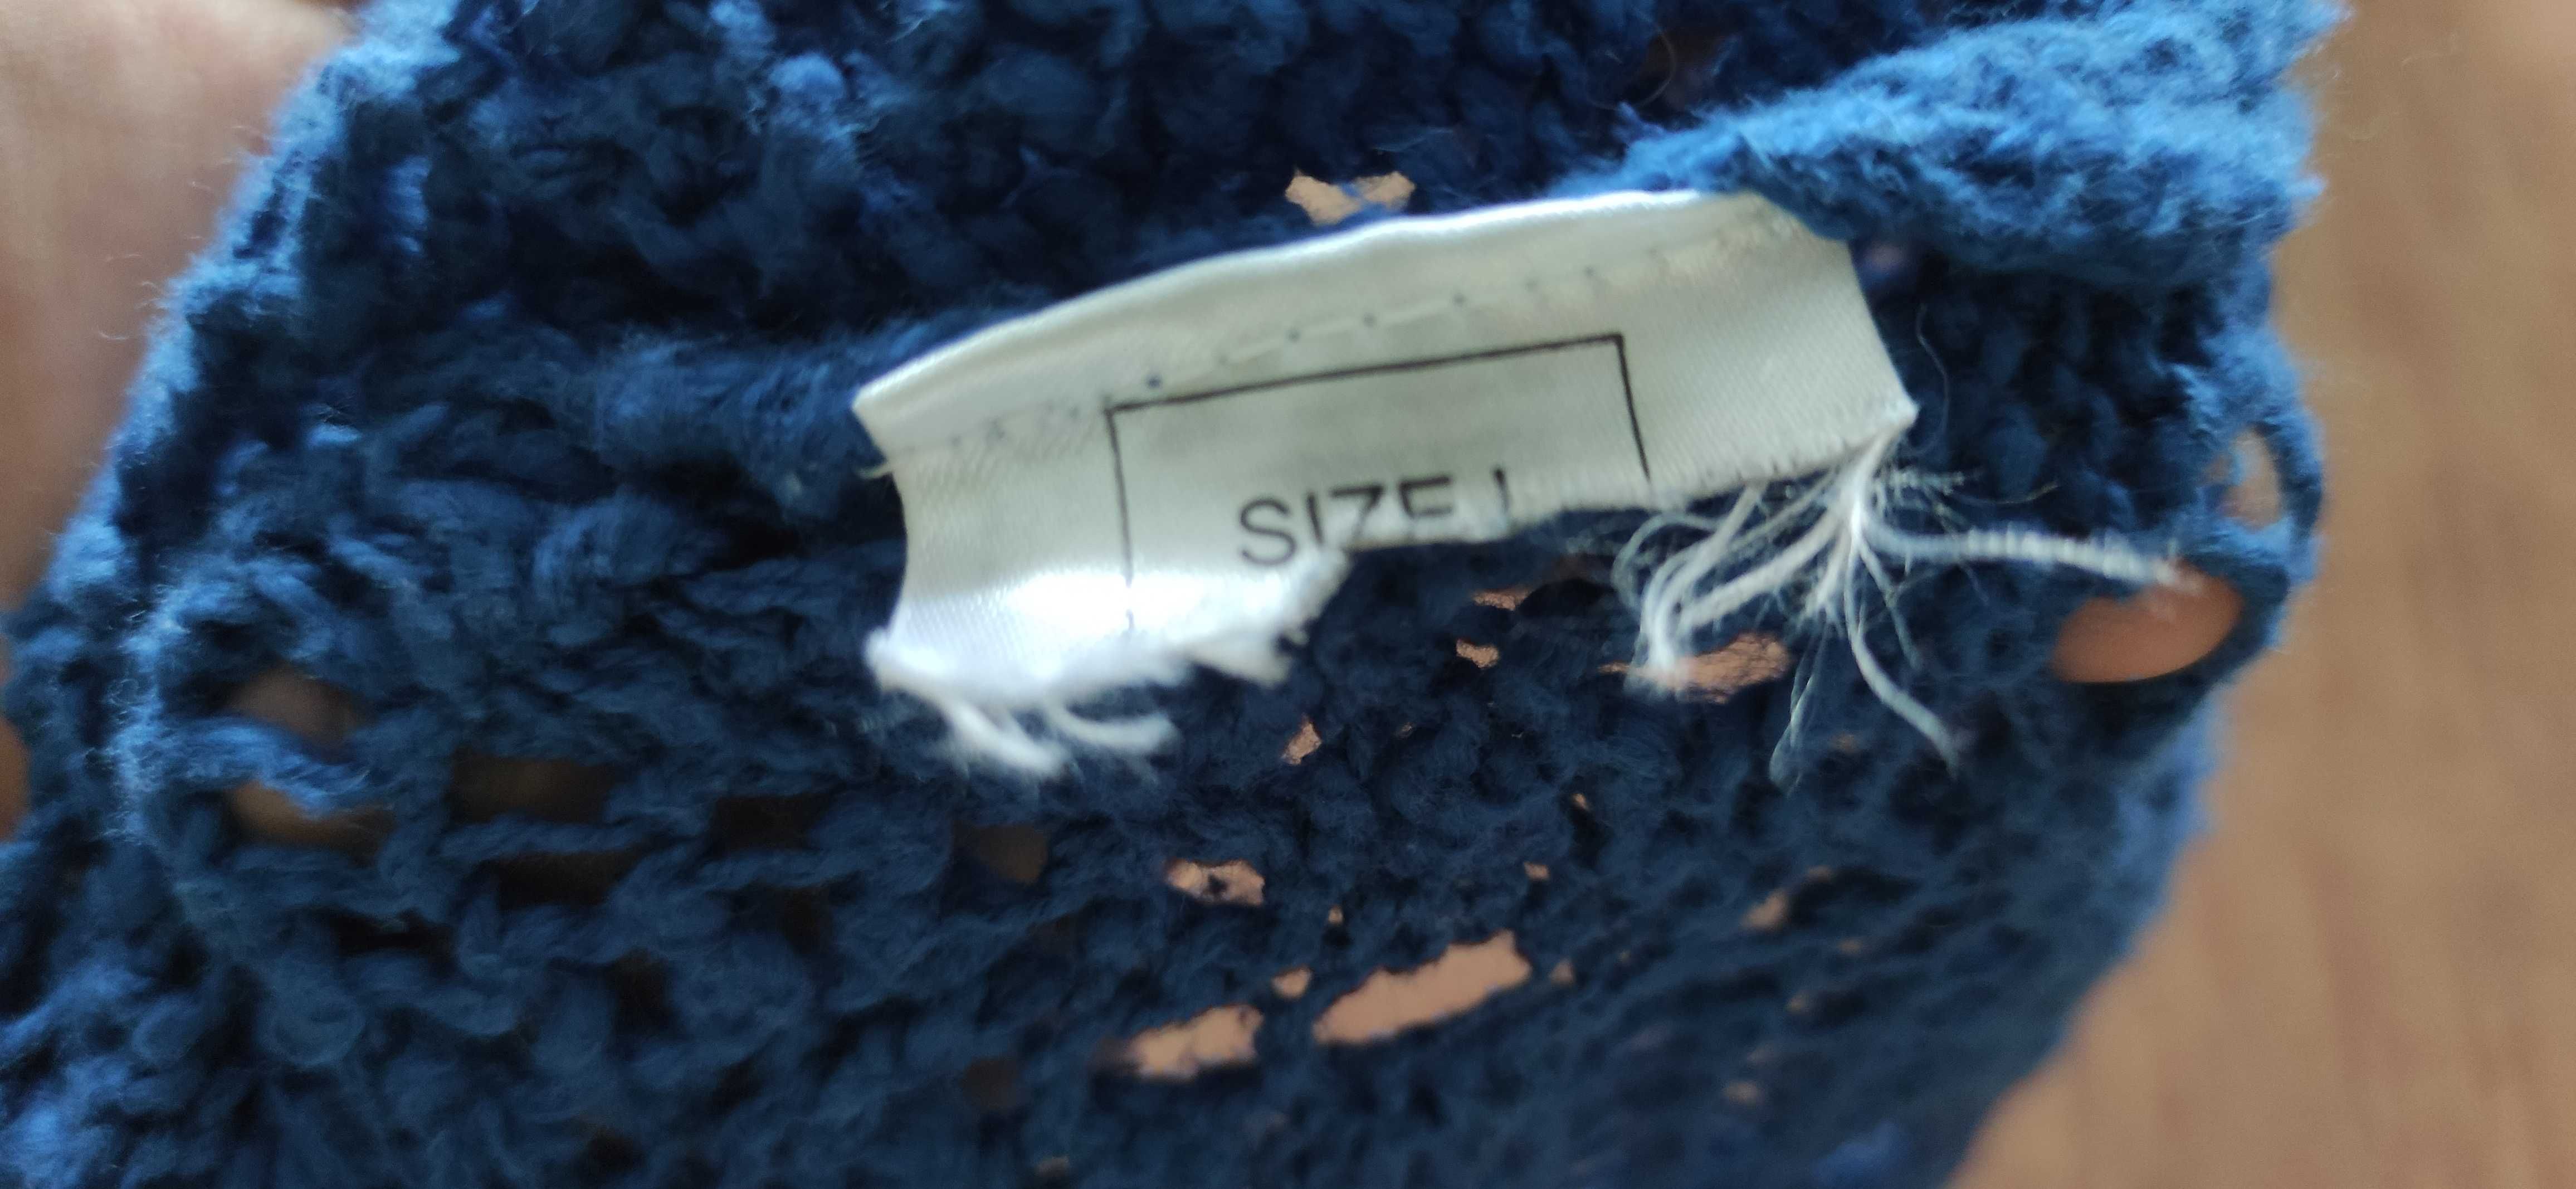 Sweter damski ciemnoniebieski używany rozmiar L